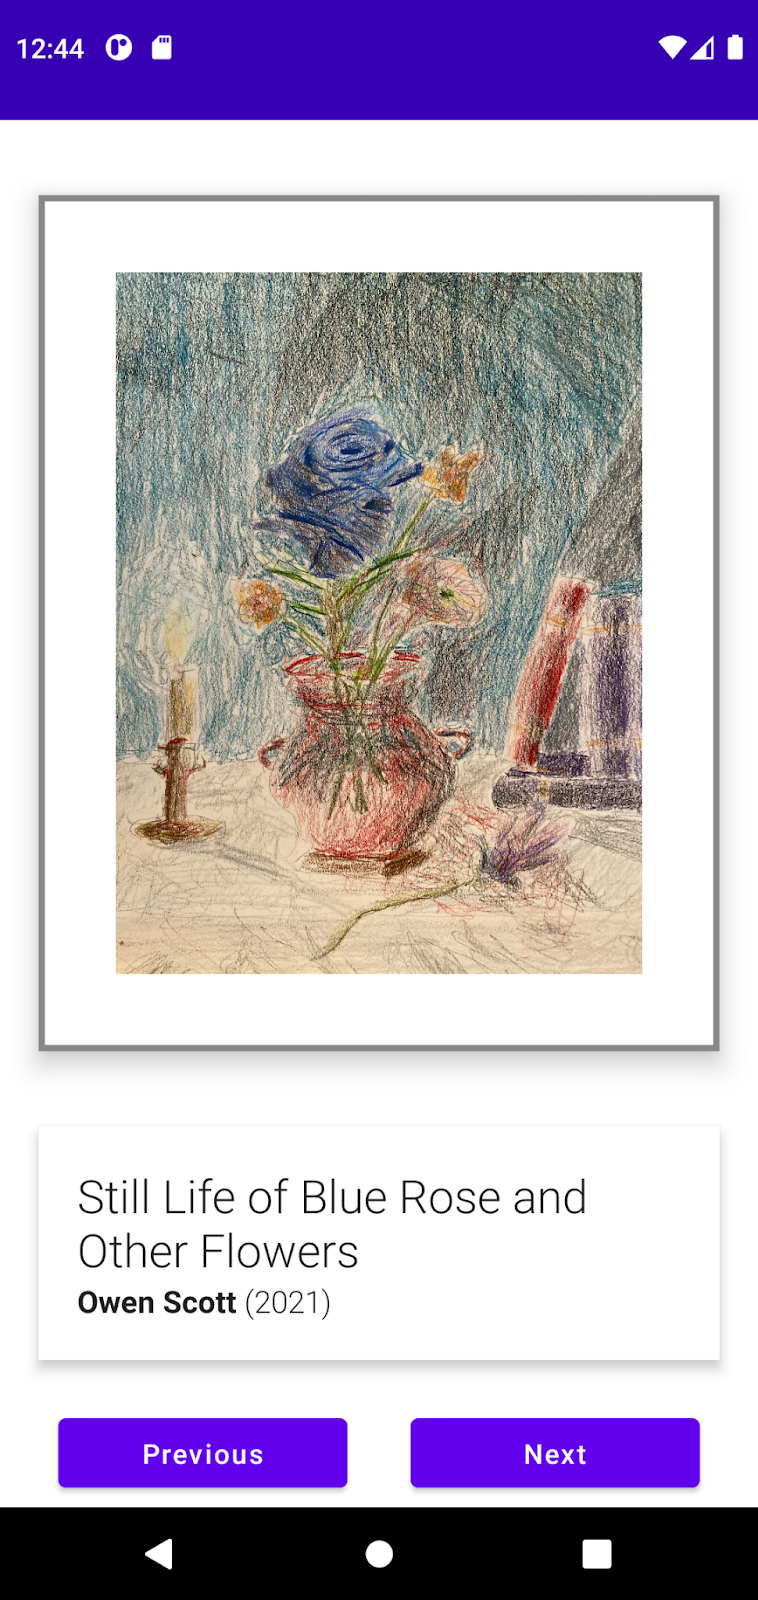 Owen Scott の「Still Life of Blue Rose and Other Flowers」を表示しているアートスペース アプリの例